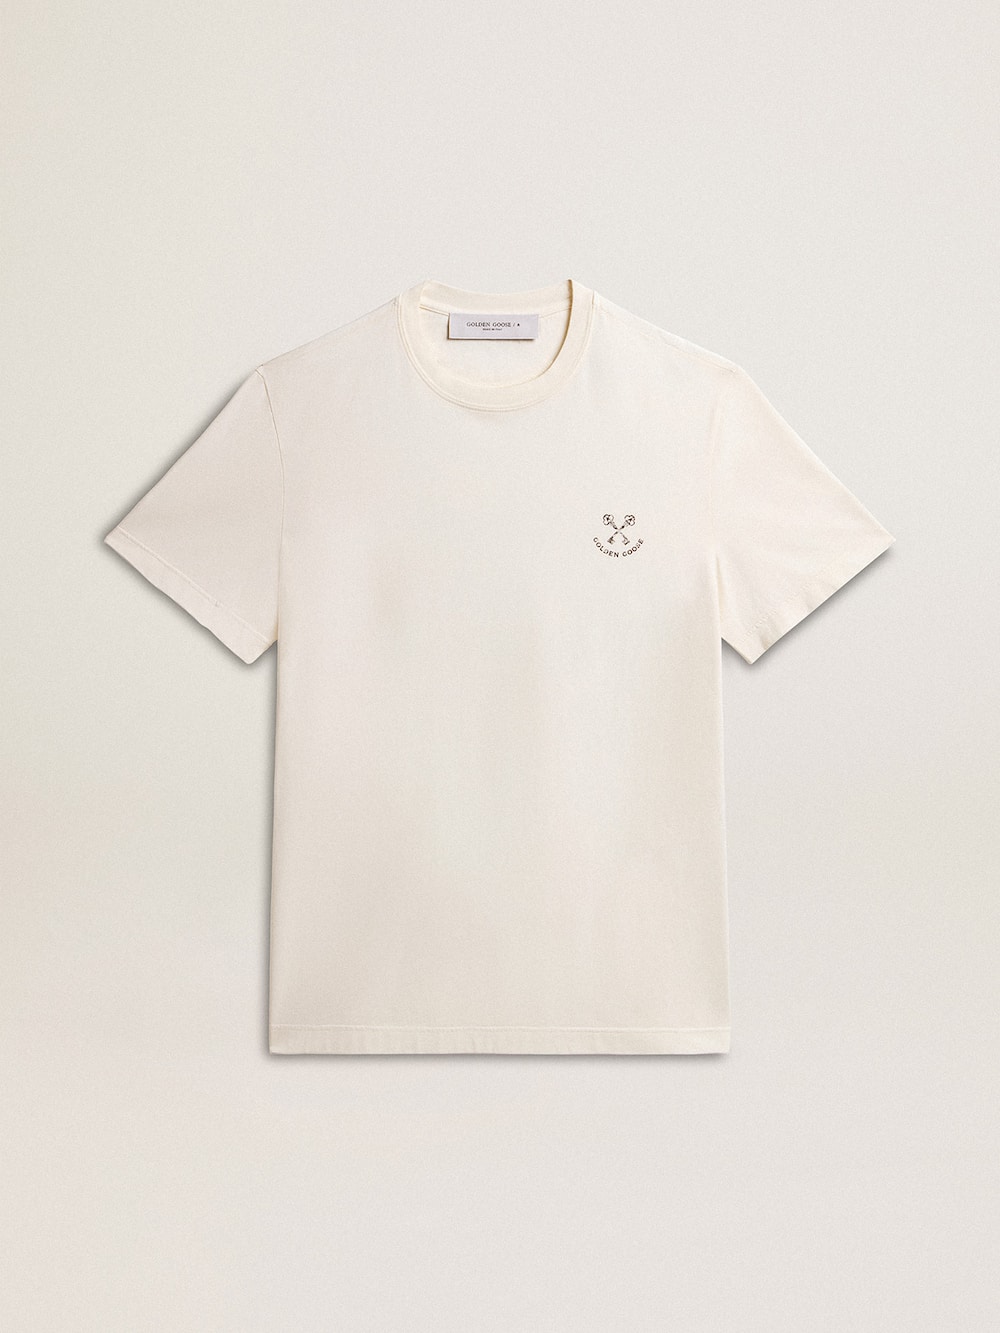 Golden Goose - T-shirt homme en coton blanc vieilli avec imprimé sur la poitrine in 